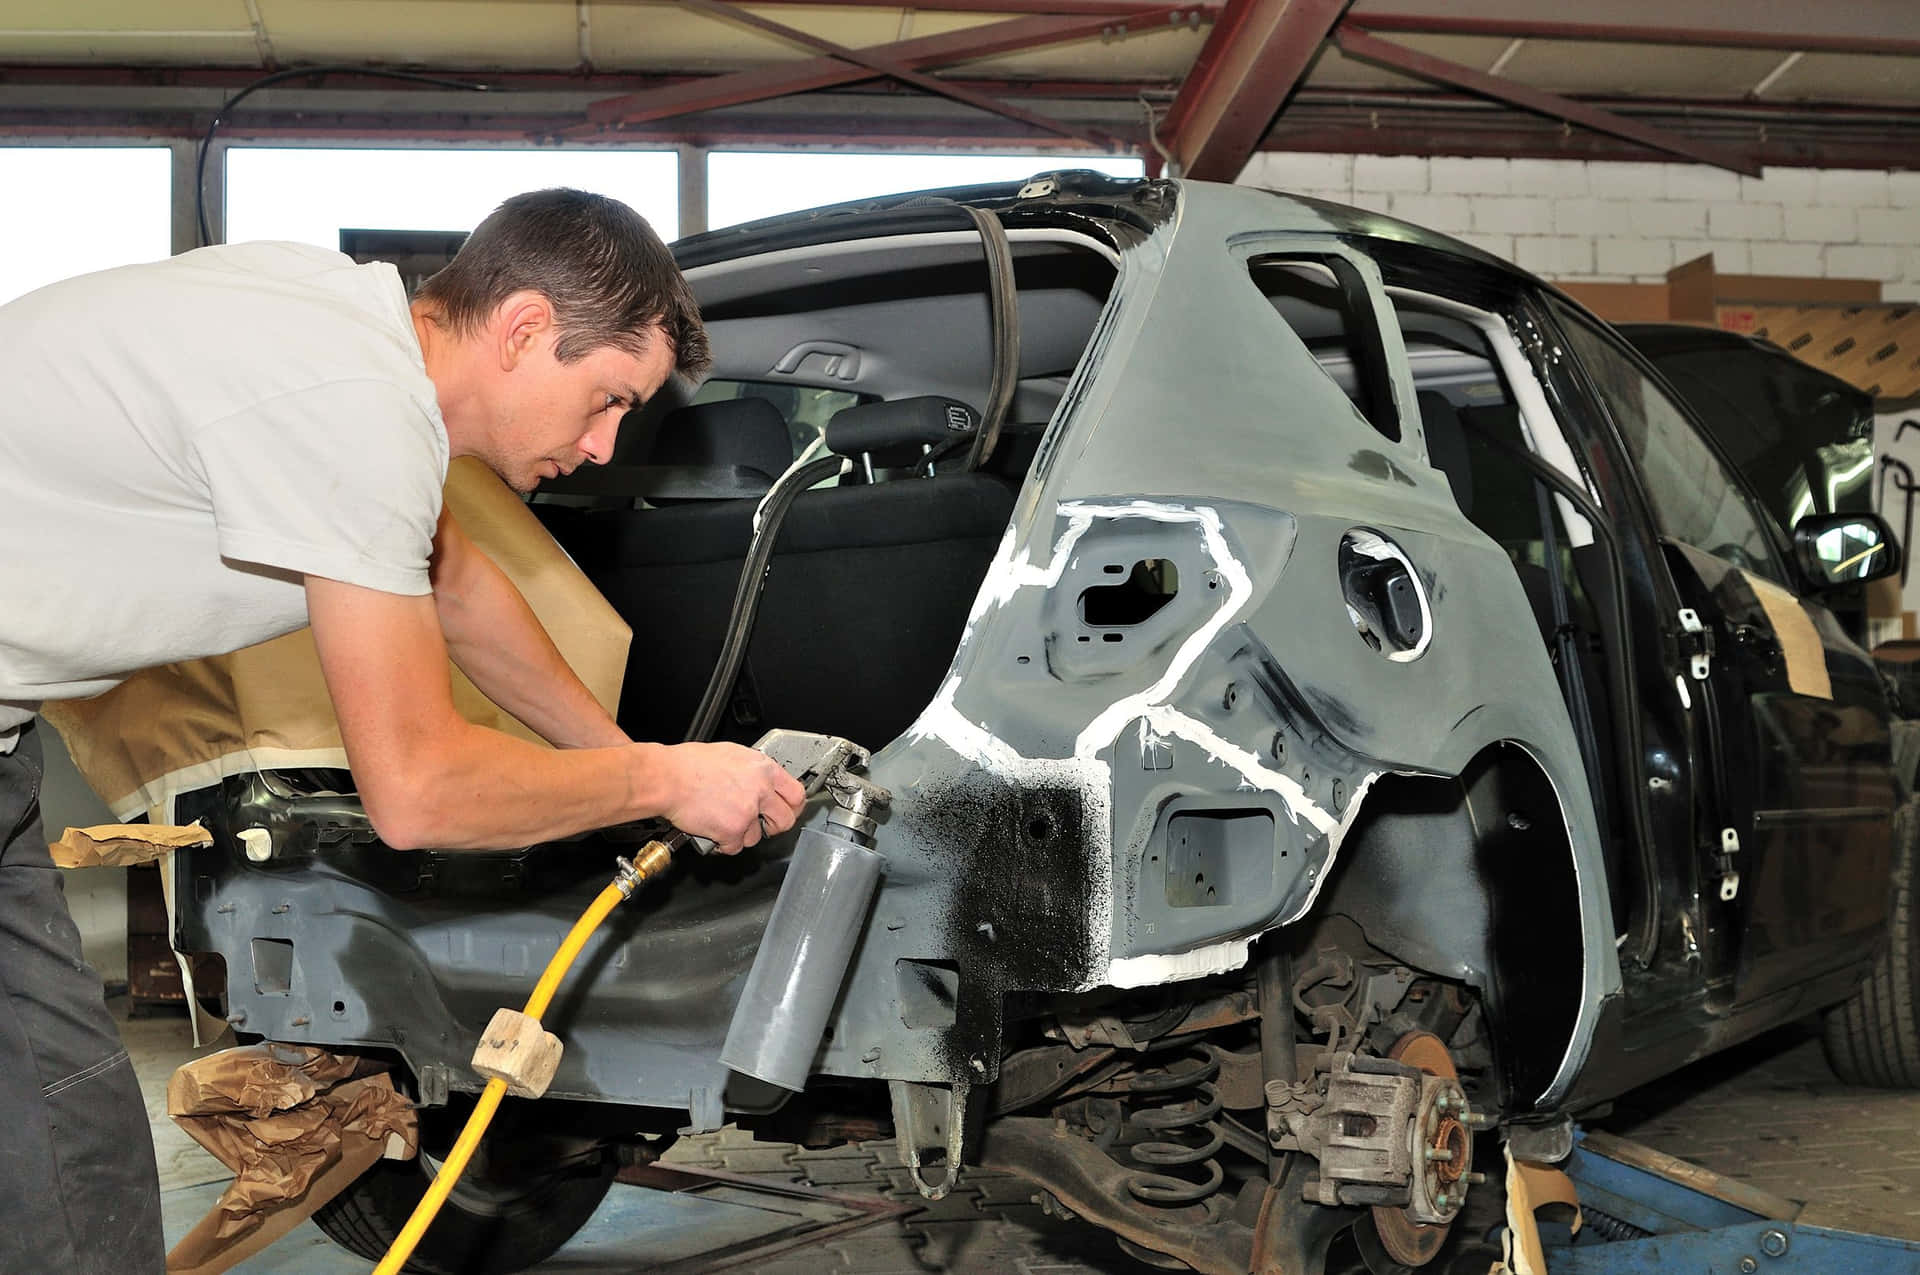 Professional mechanic repairing car at an auto repair shop Wallpaper